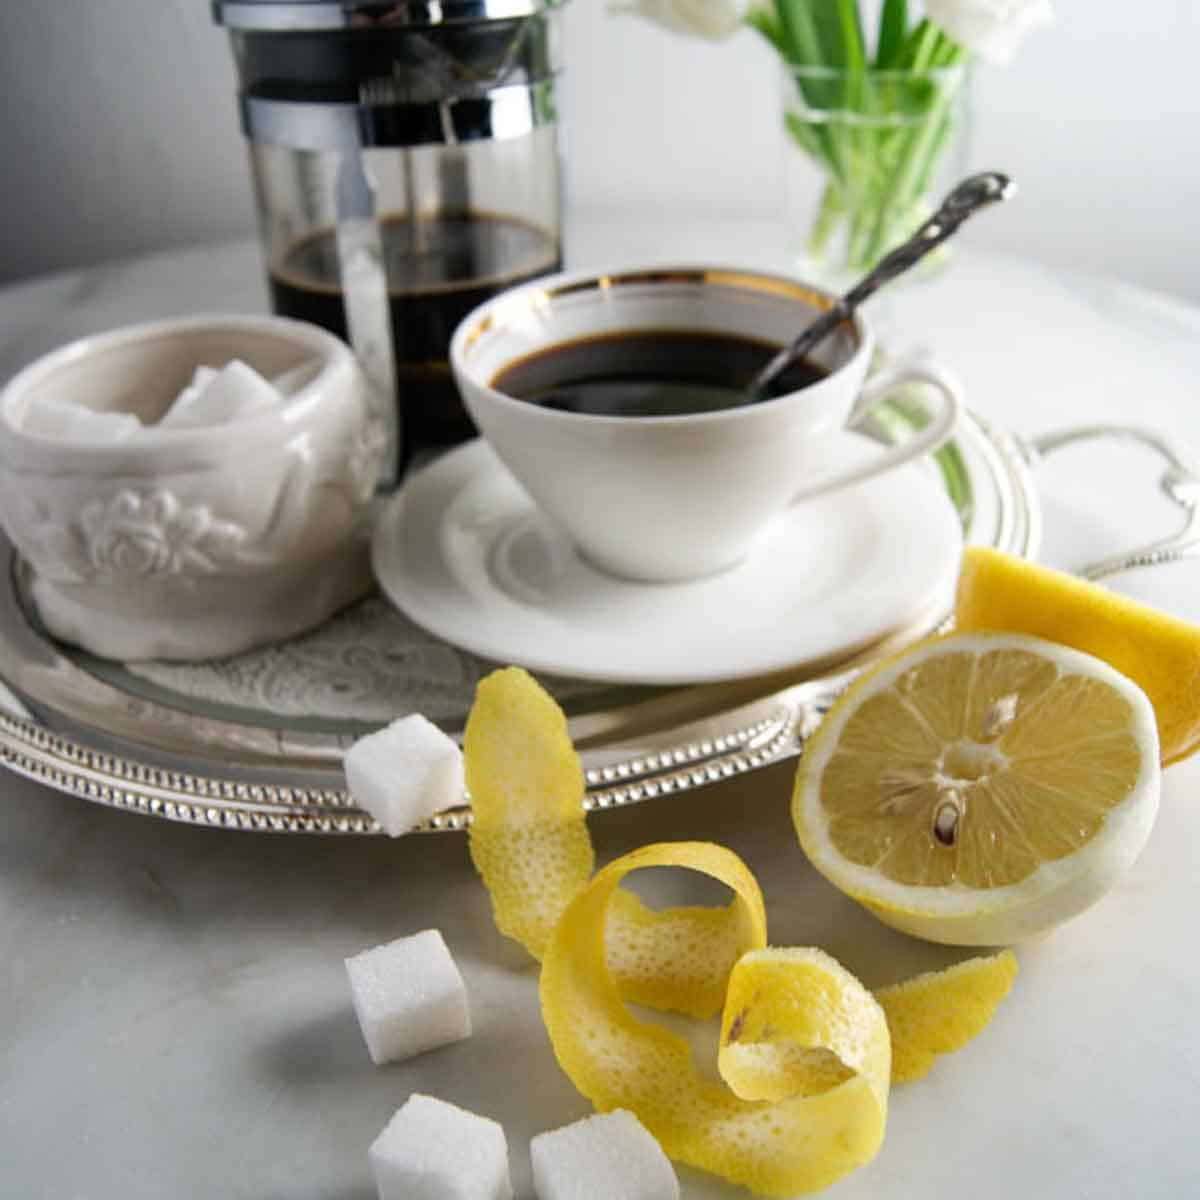 Katerkaffee mit Würfelzucker und Zitronenschale